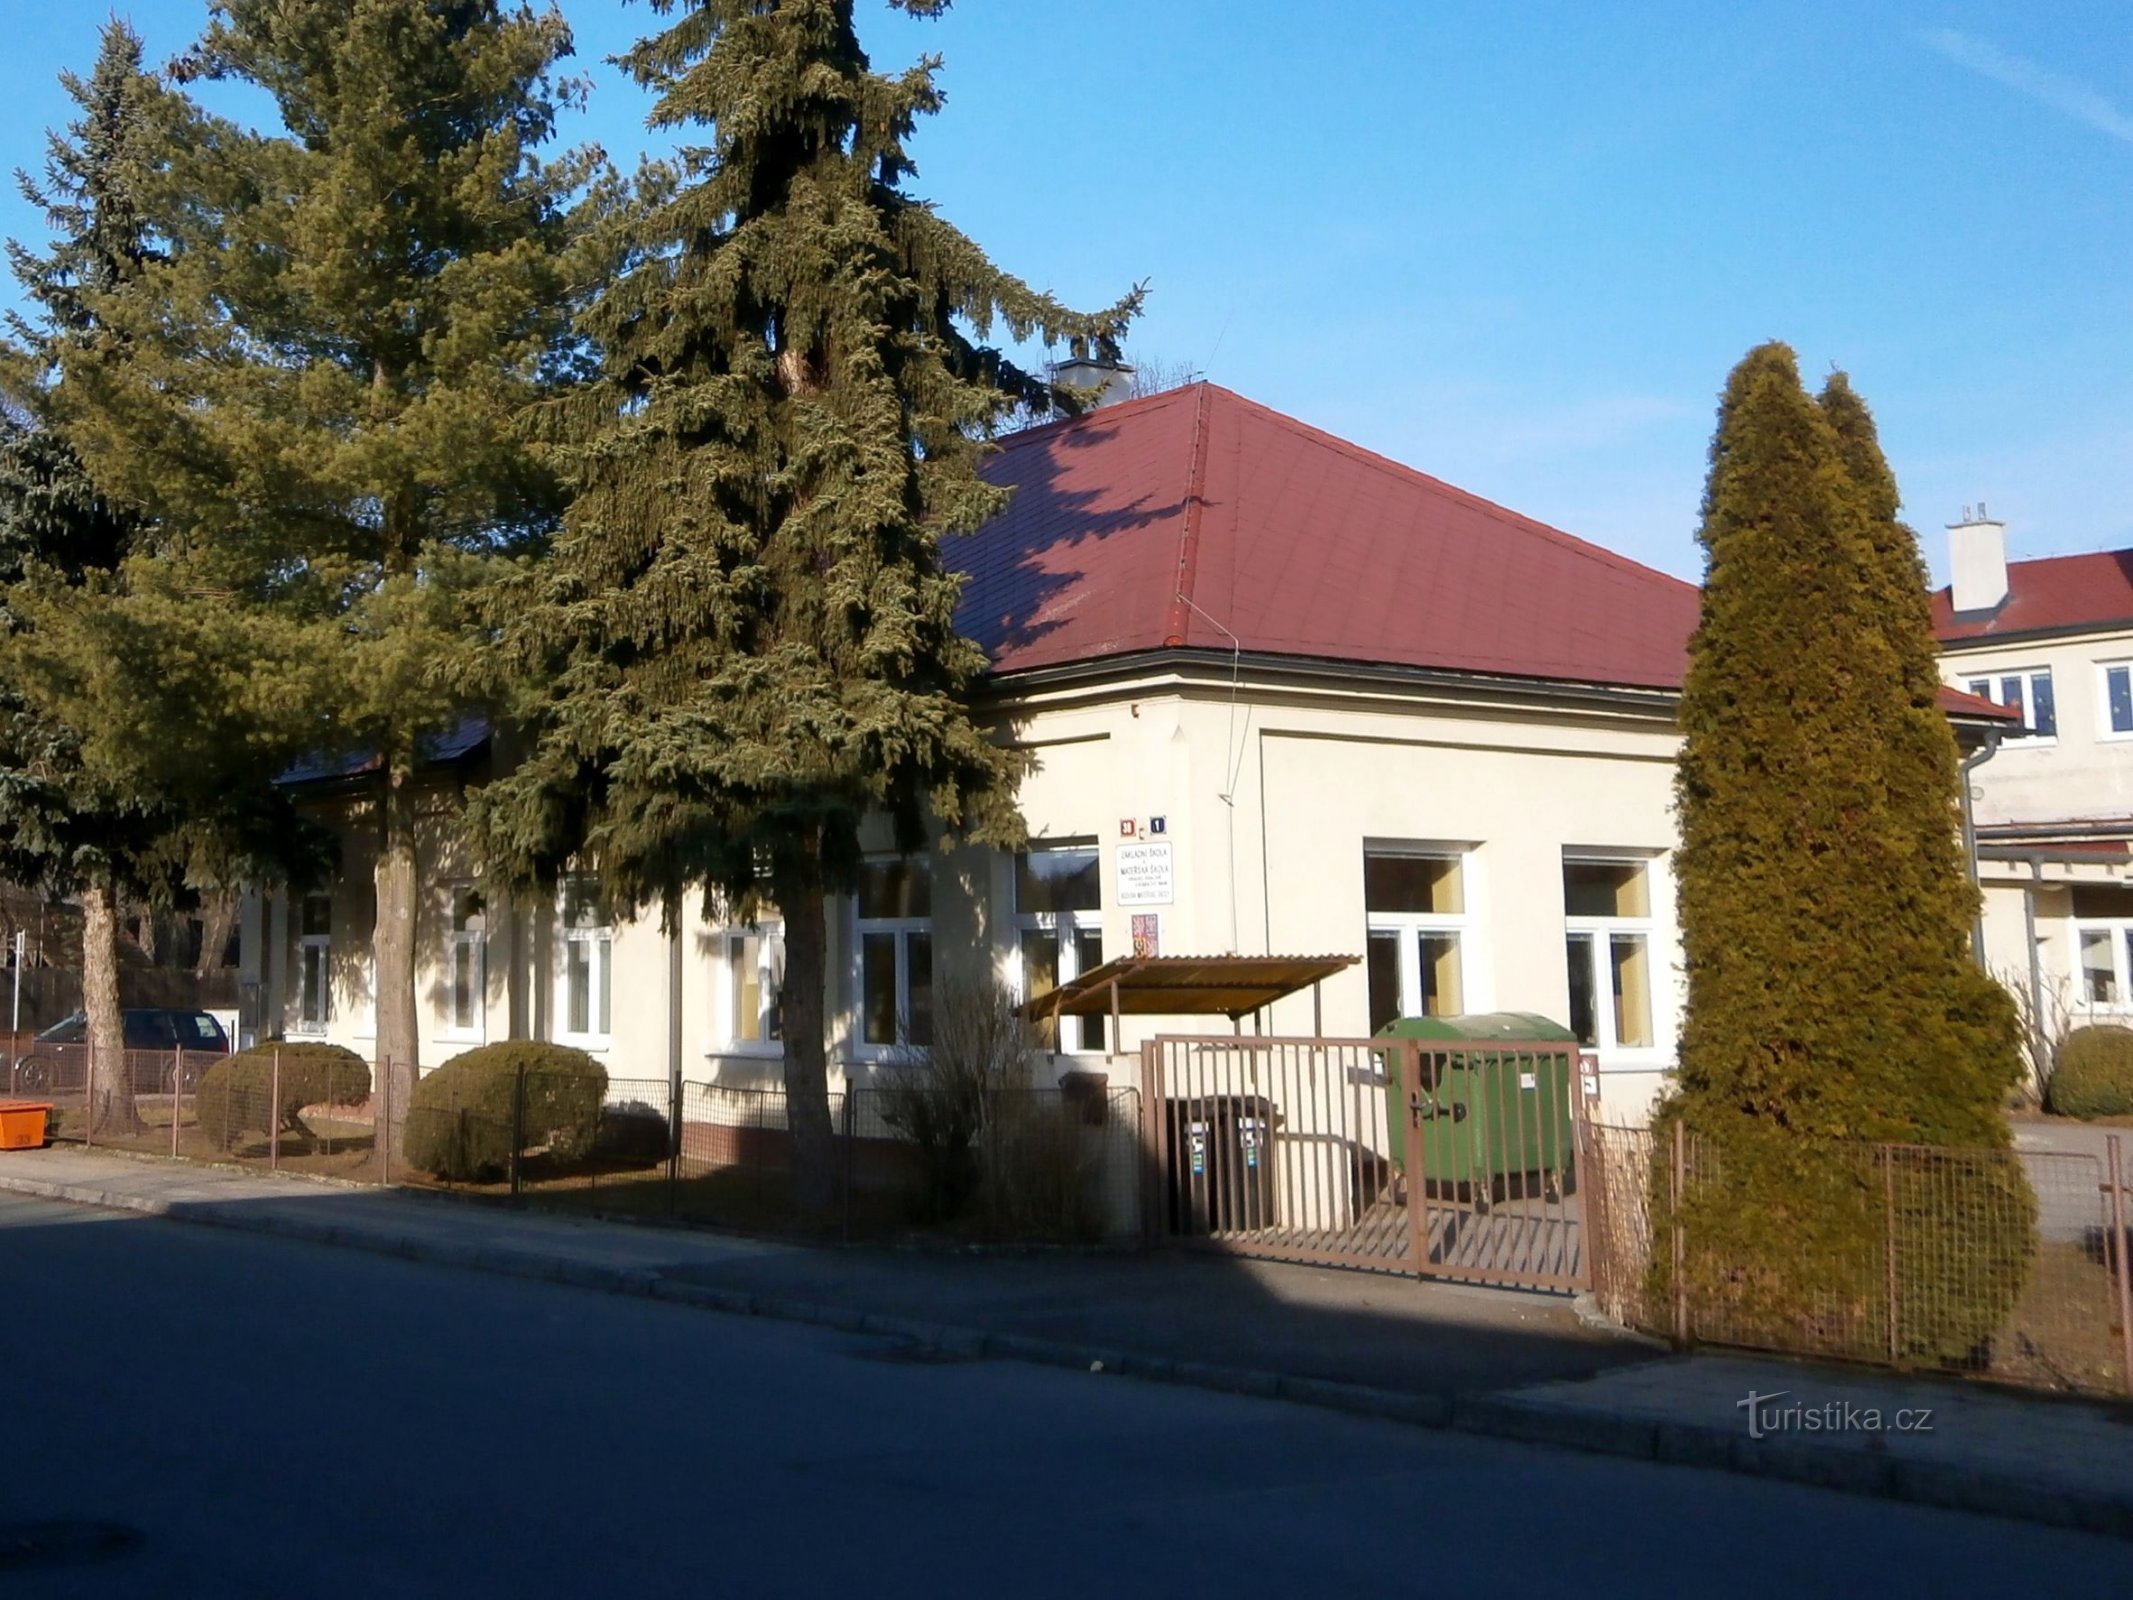 École de Březhrad (Hradec Králové, 4.3.2017/XNUMX/XNUMX)